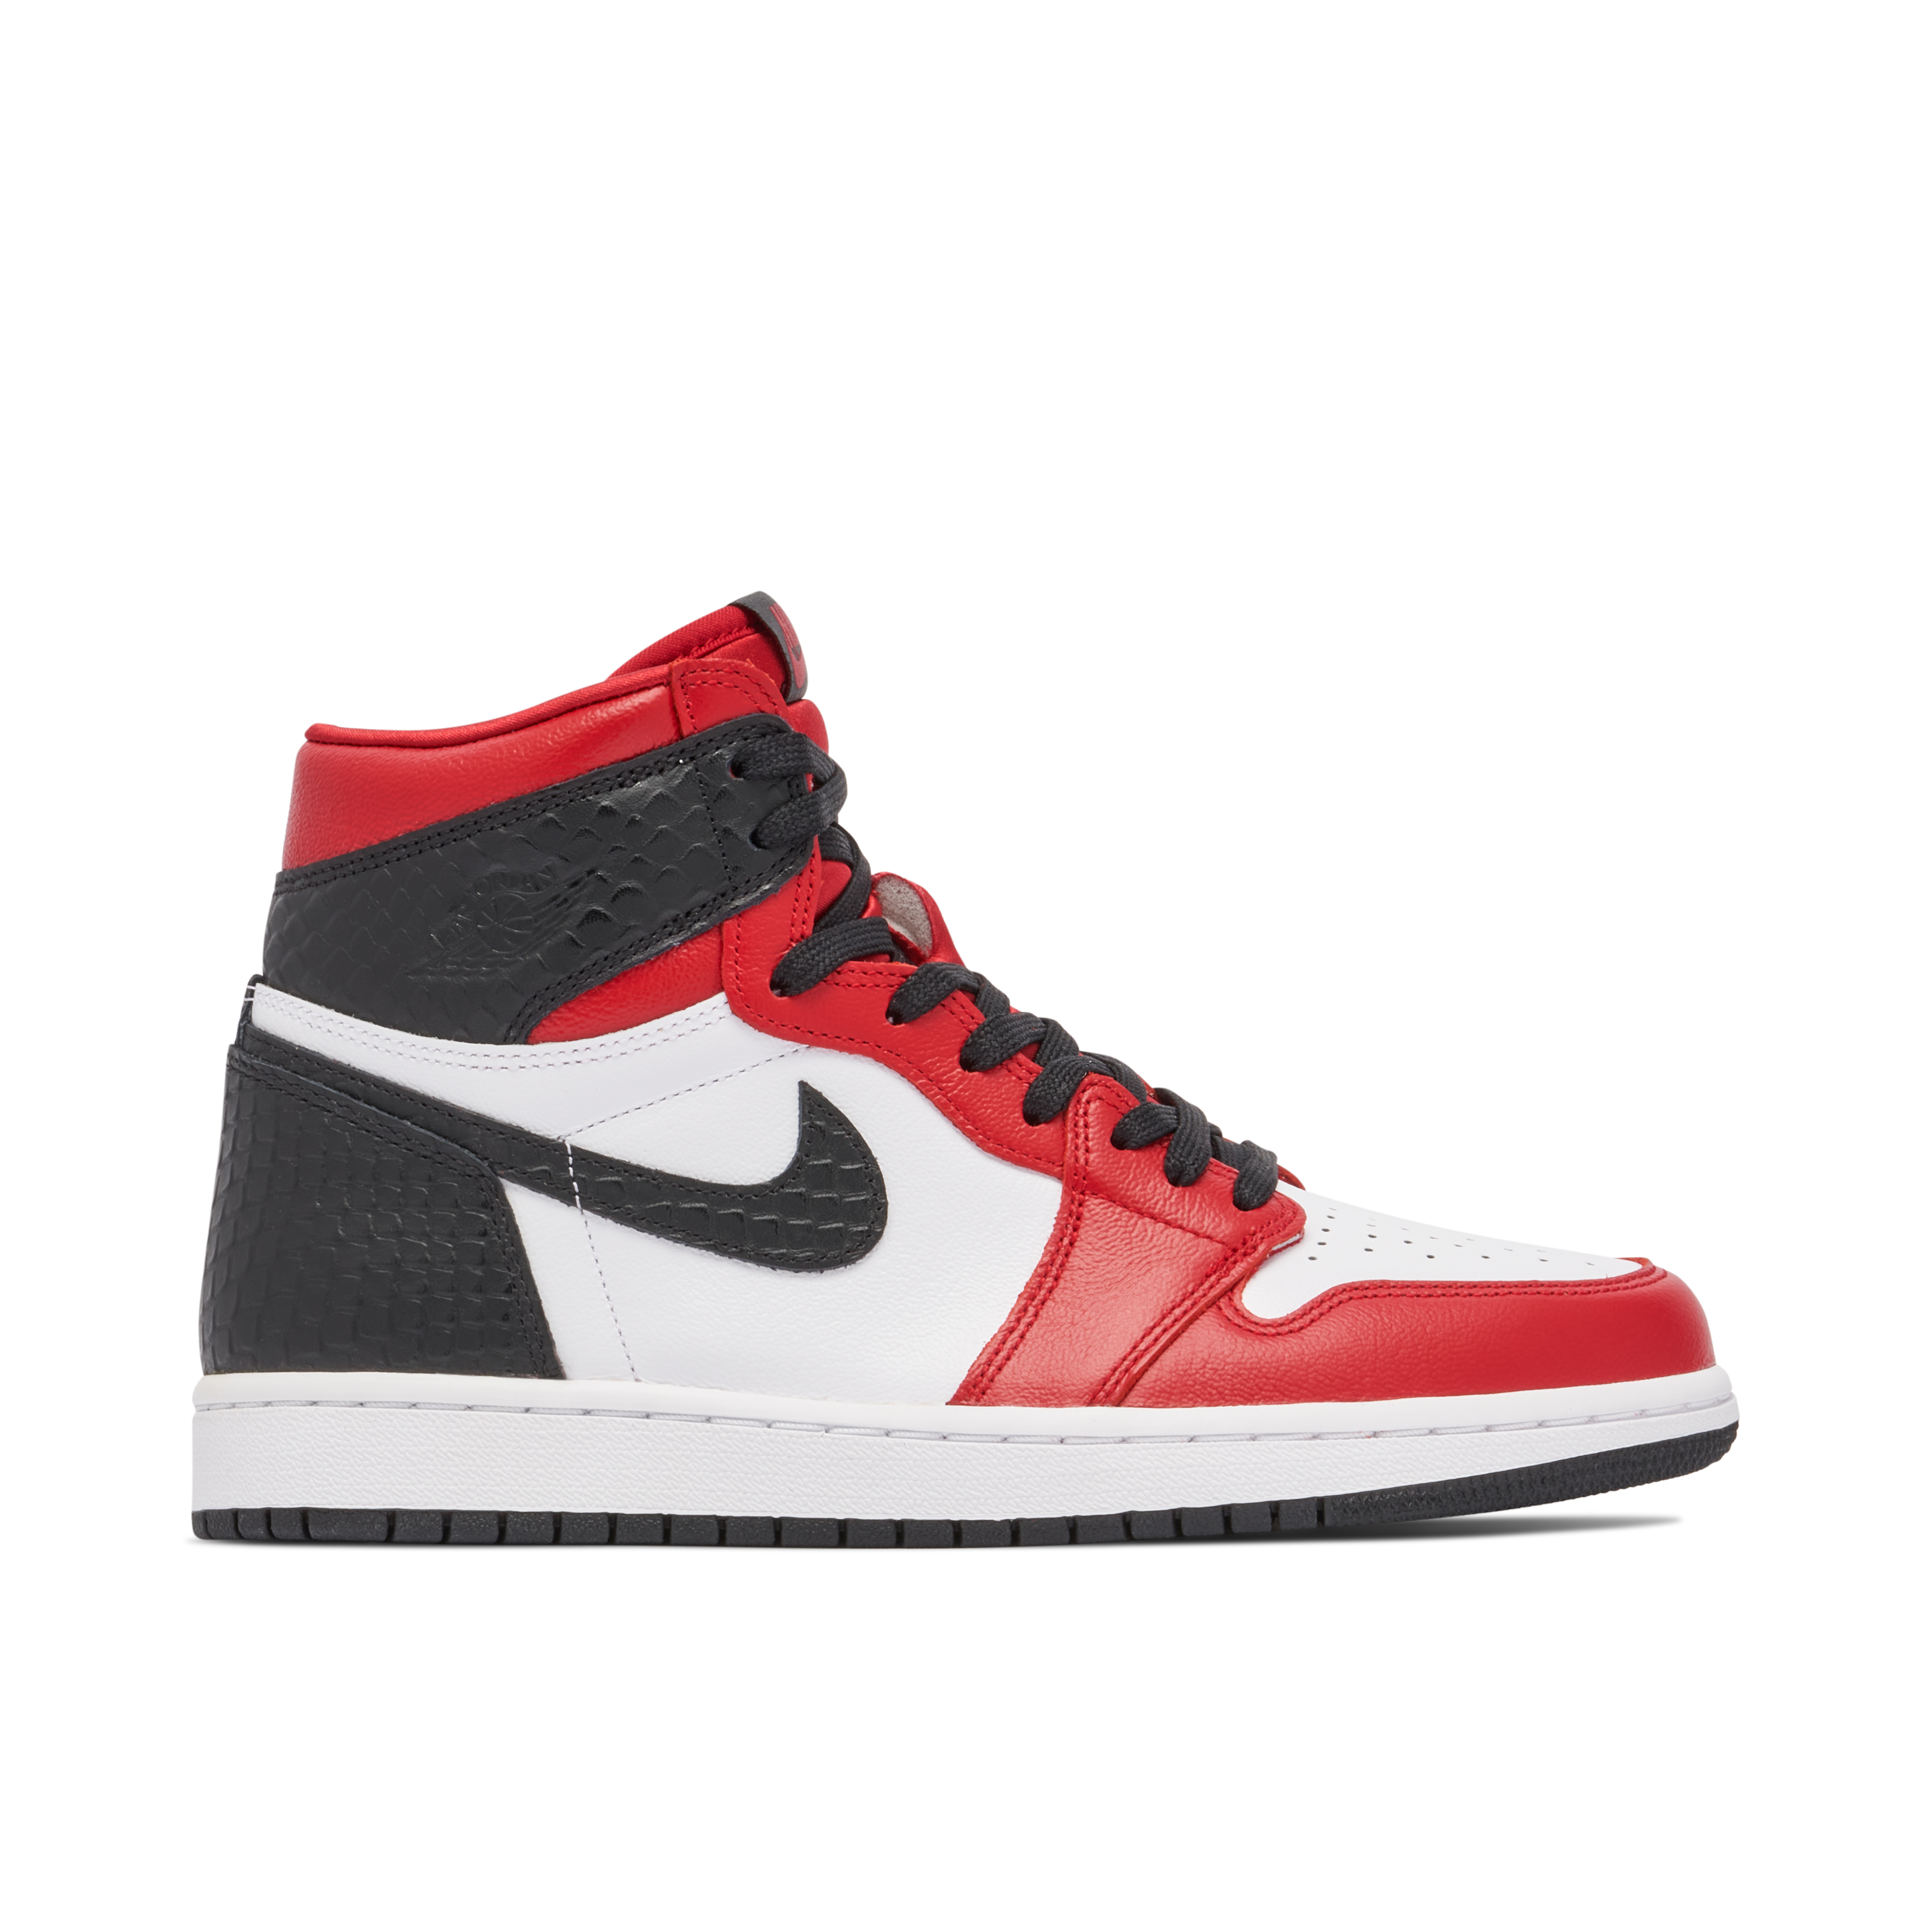 Red Jordans | New Red Air Jordan 